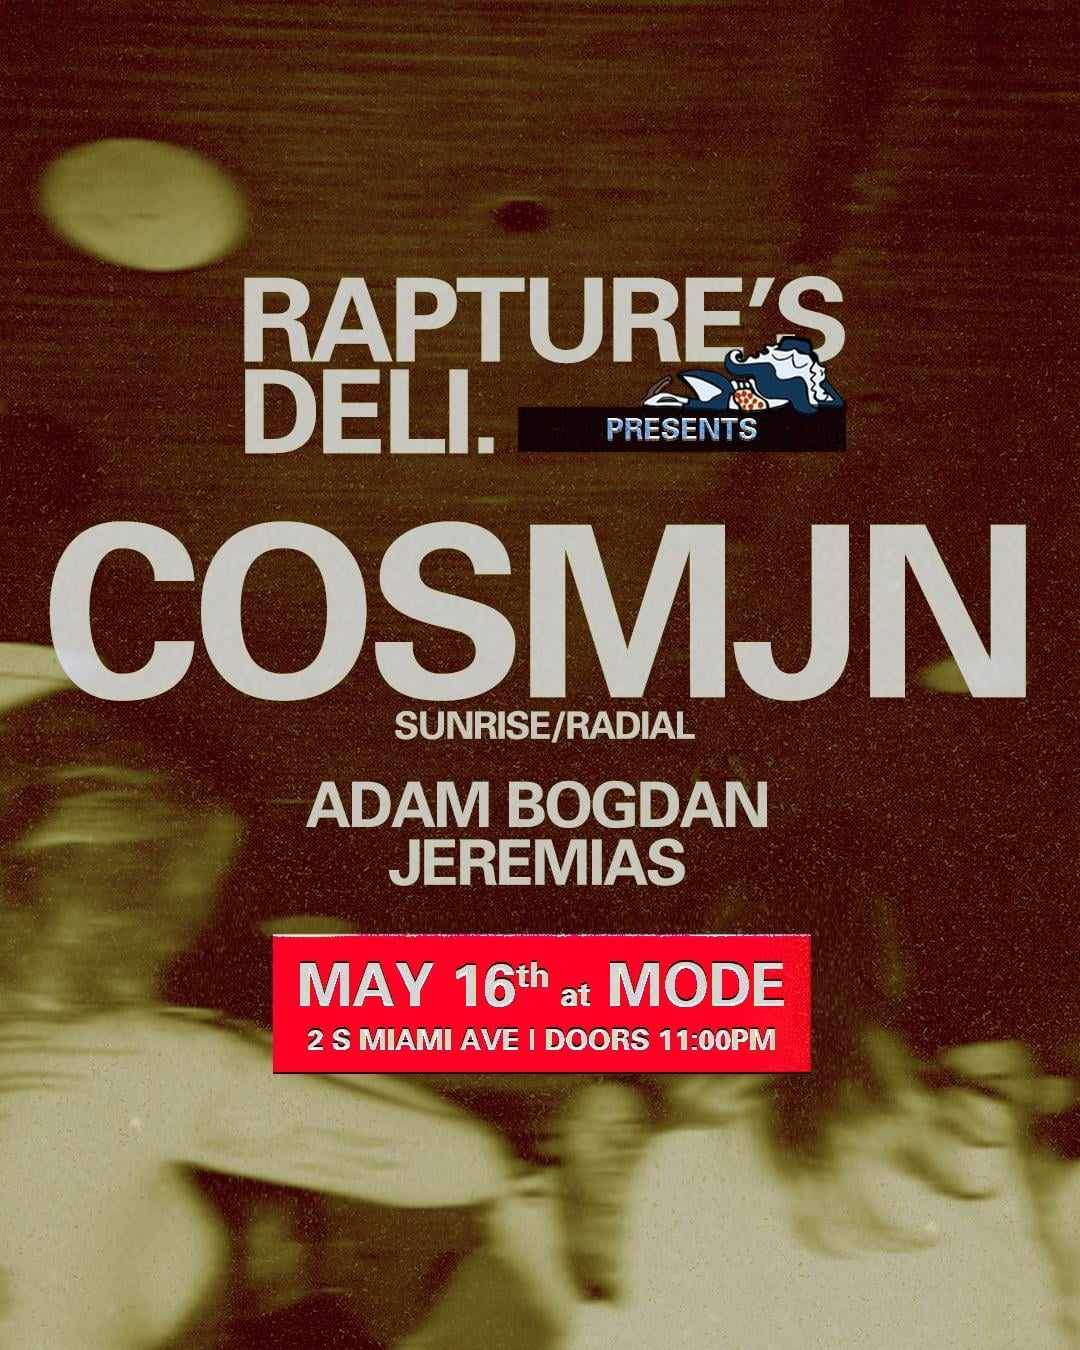 RAPTURE'S DELI special - Cosmjn [Romania, Sunrise/Radial] - フライヤー表